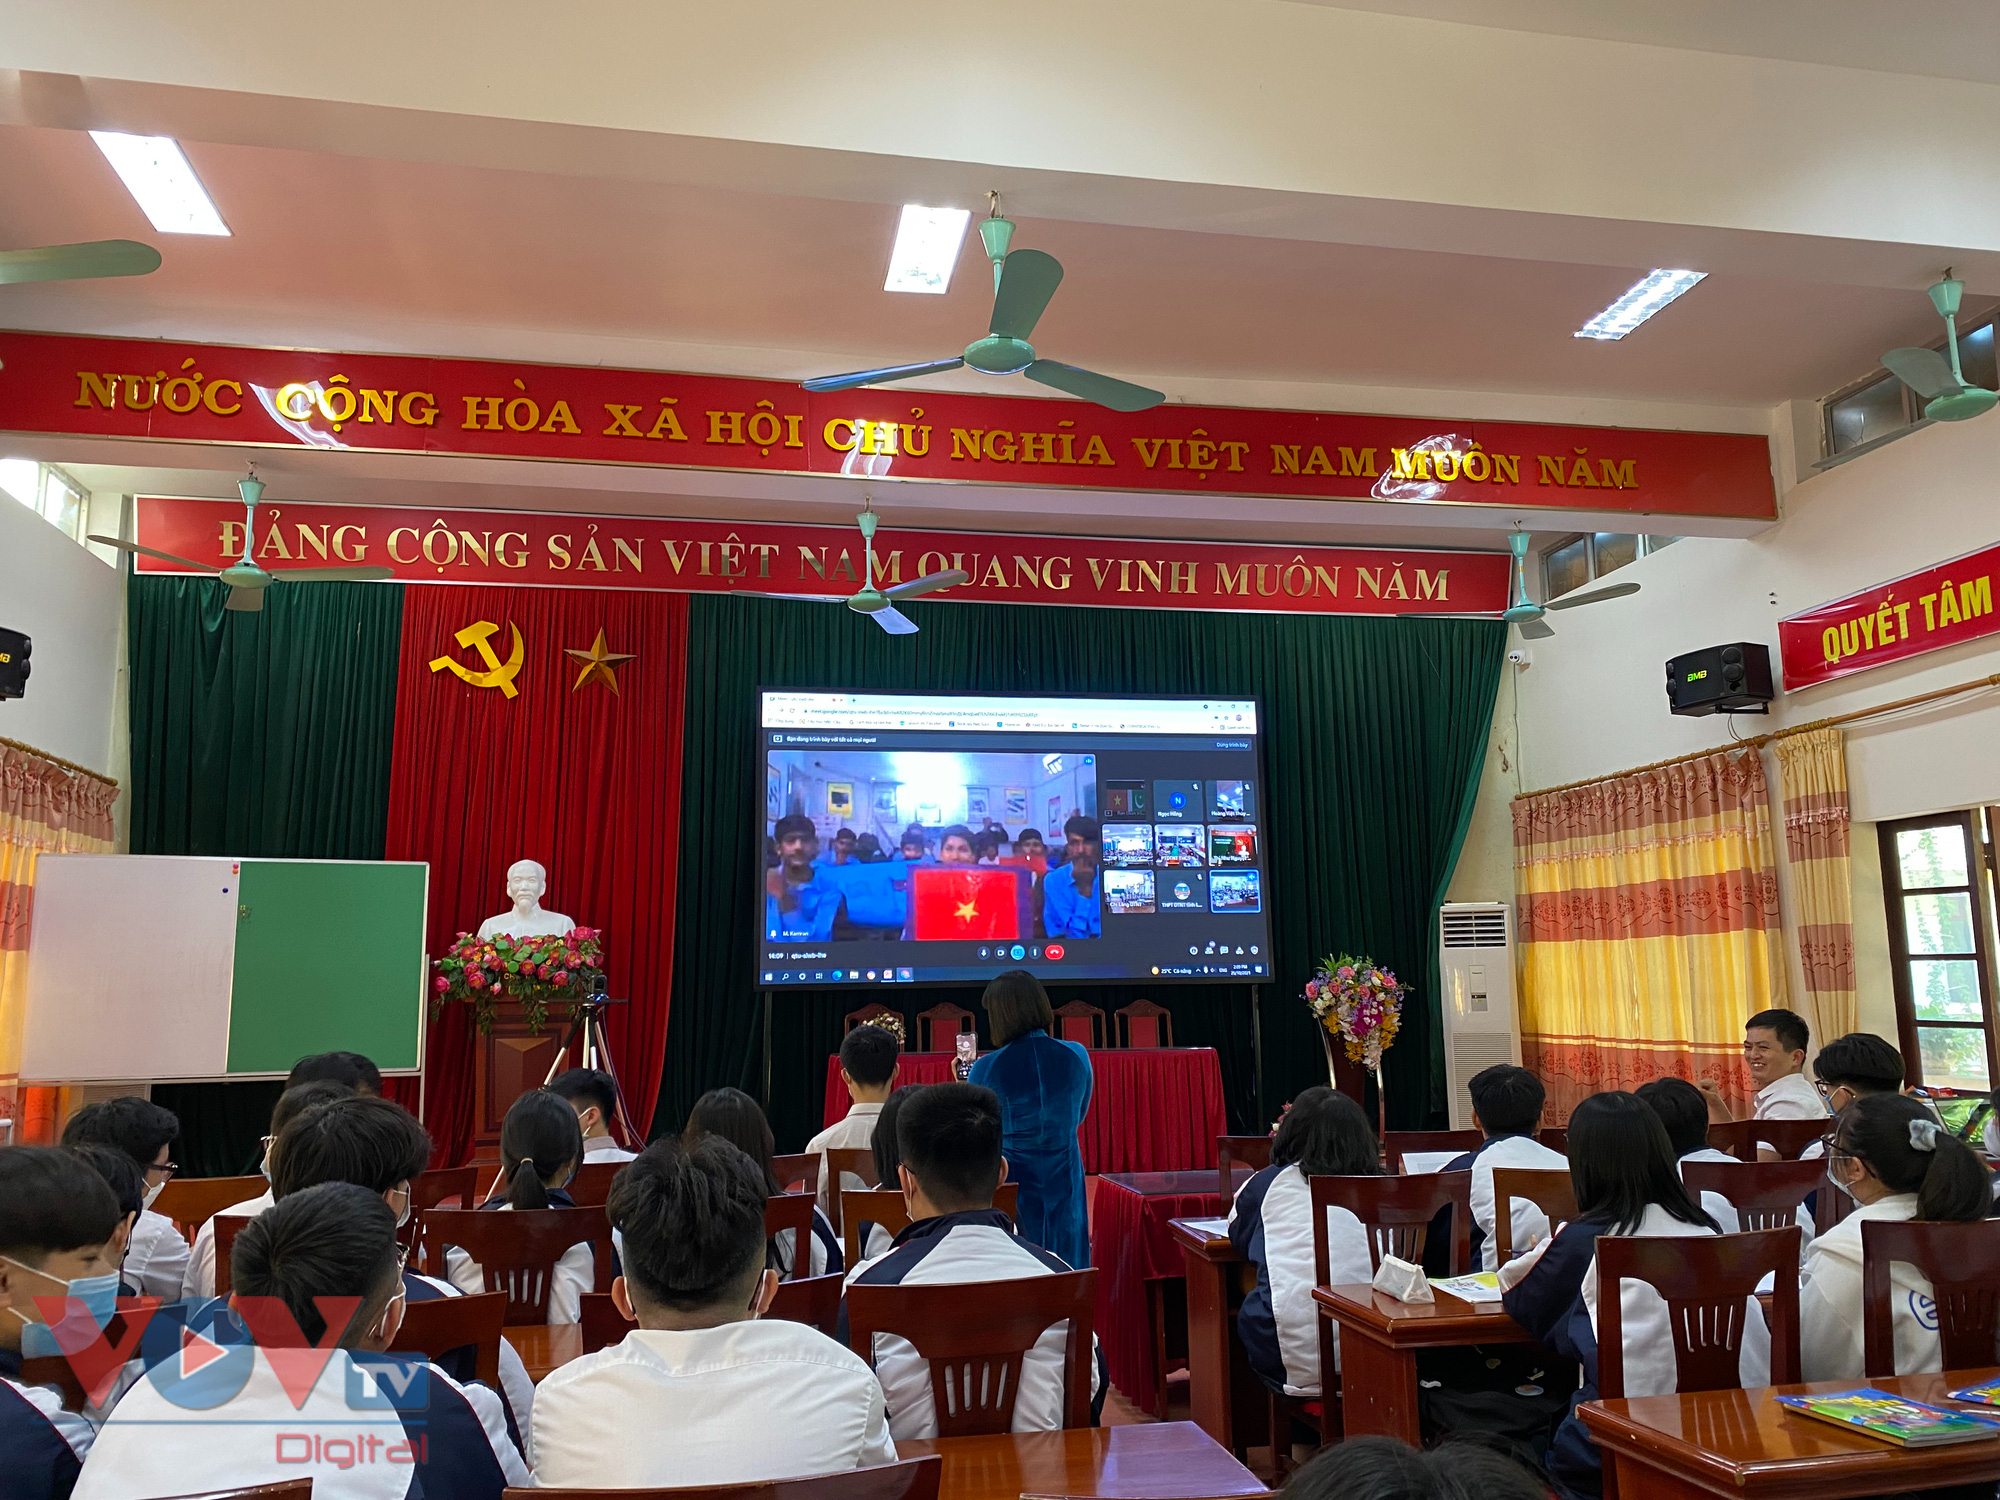 Trường THPT Việt Bắc nâng cao chất lượng giáo dục - Ảnh 2.